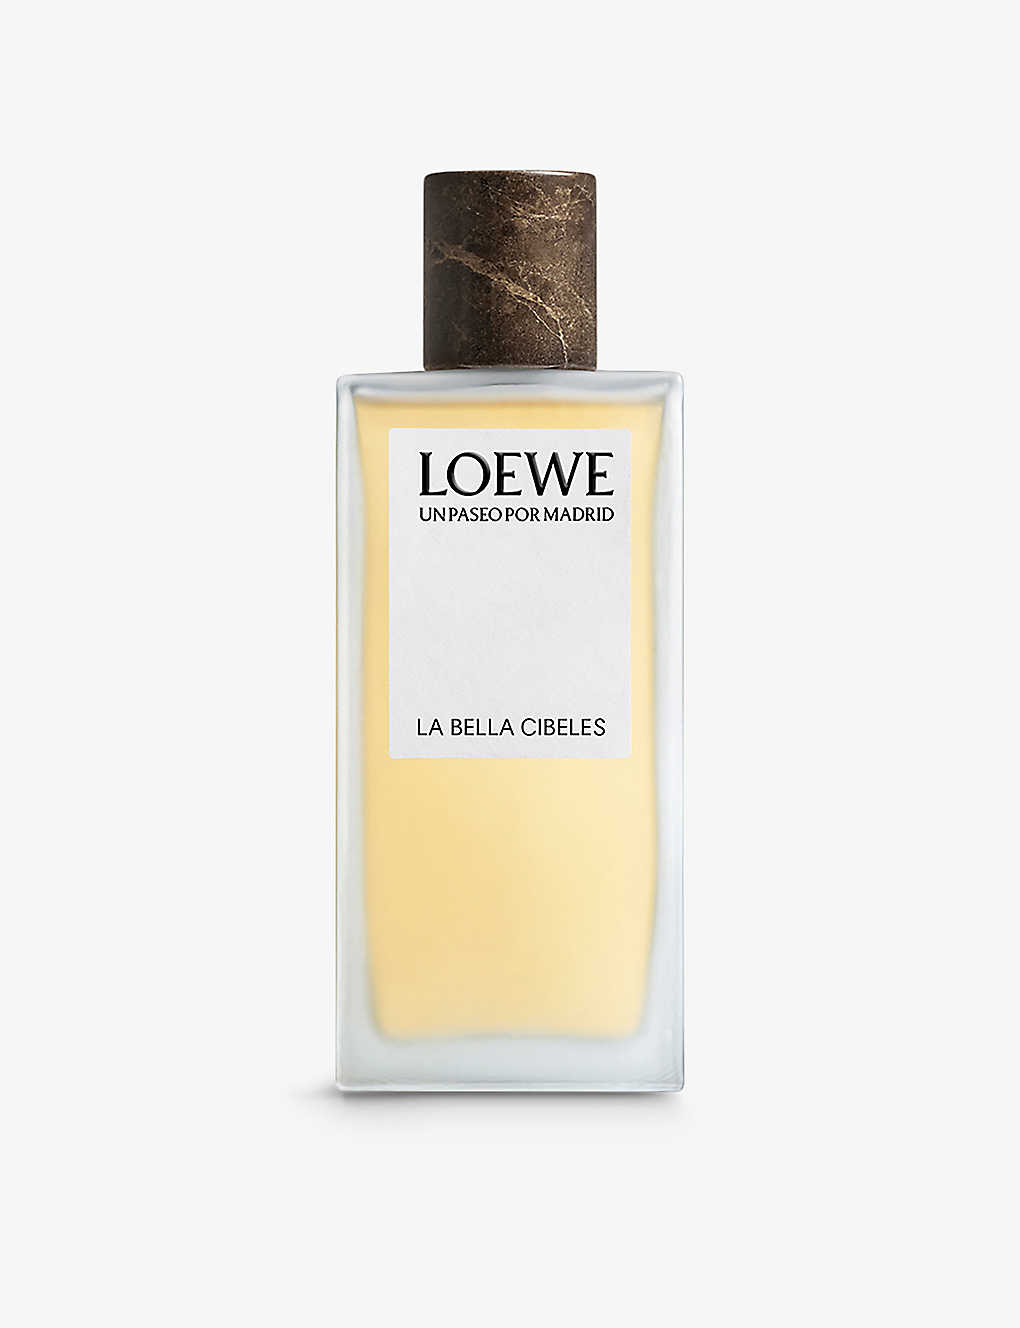 Loewe Un Paseo Por Madrid La Bella Cibeles Eau De Parfum